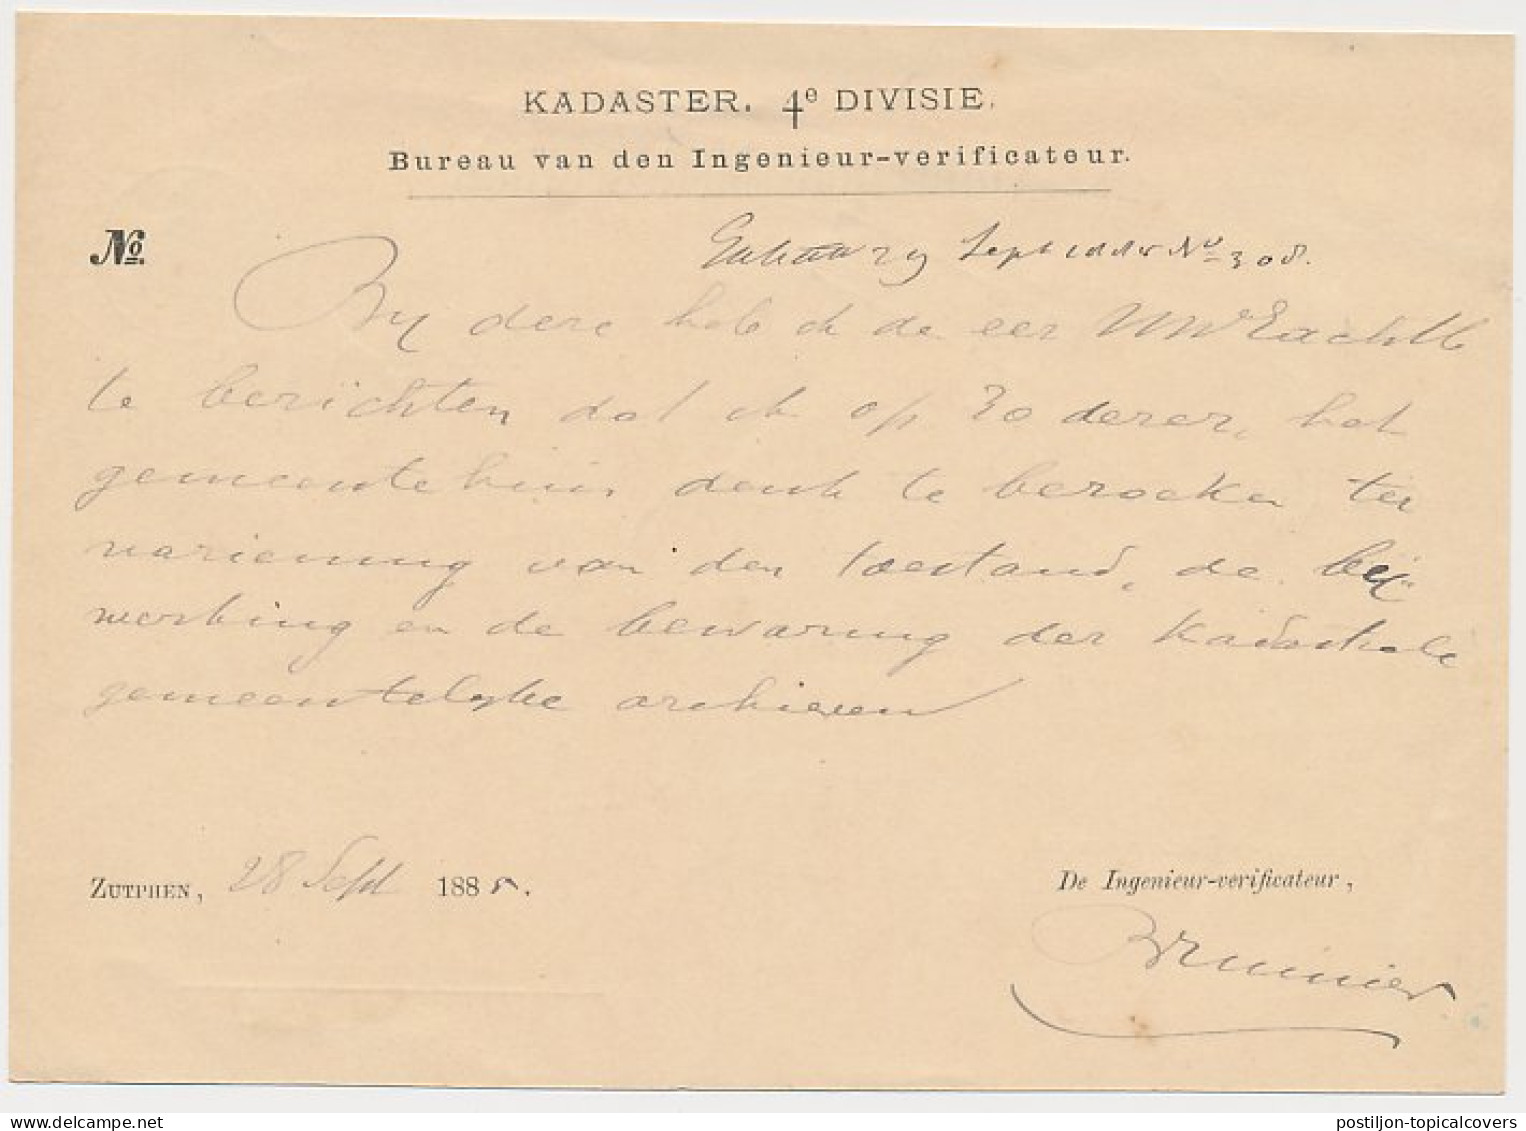 Trein Haltestempel Zutphen 1885 - Briefe U. Dokumente